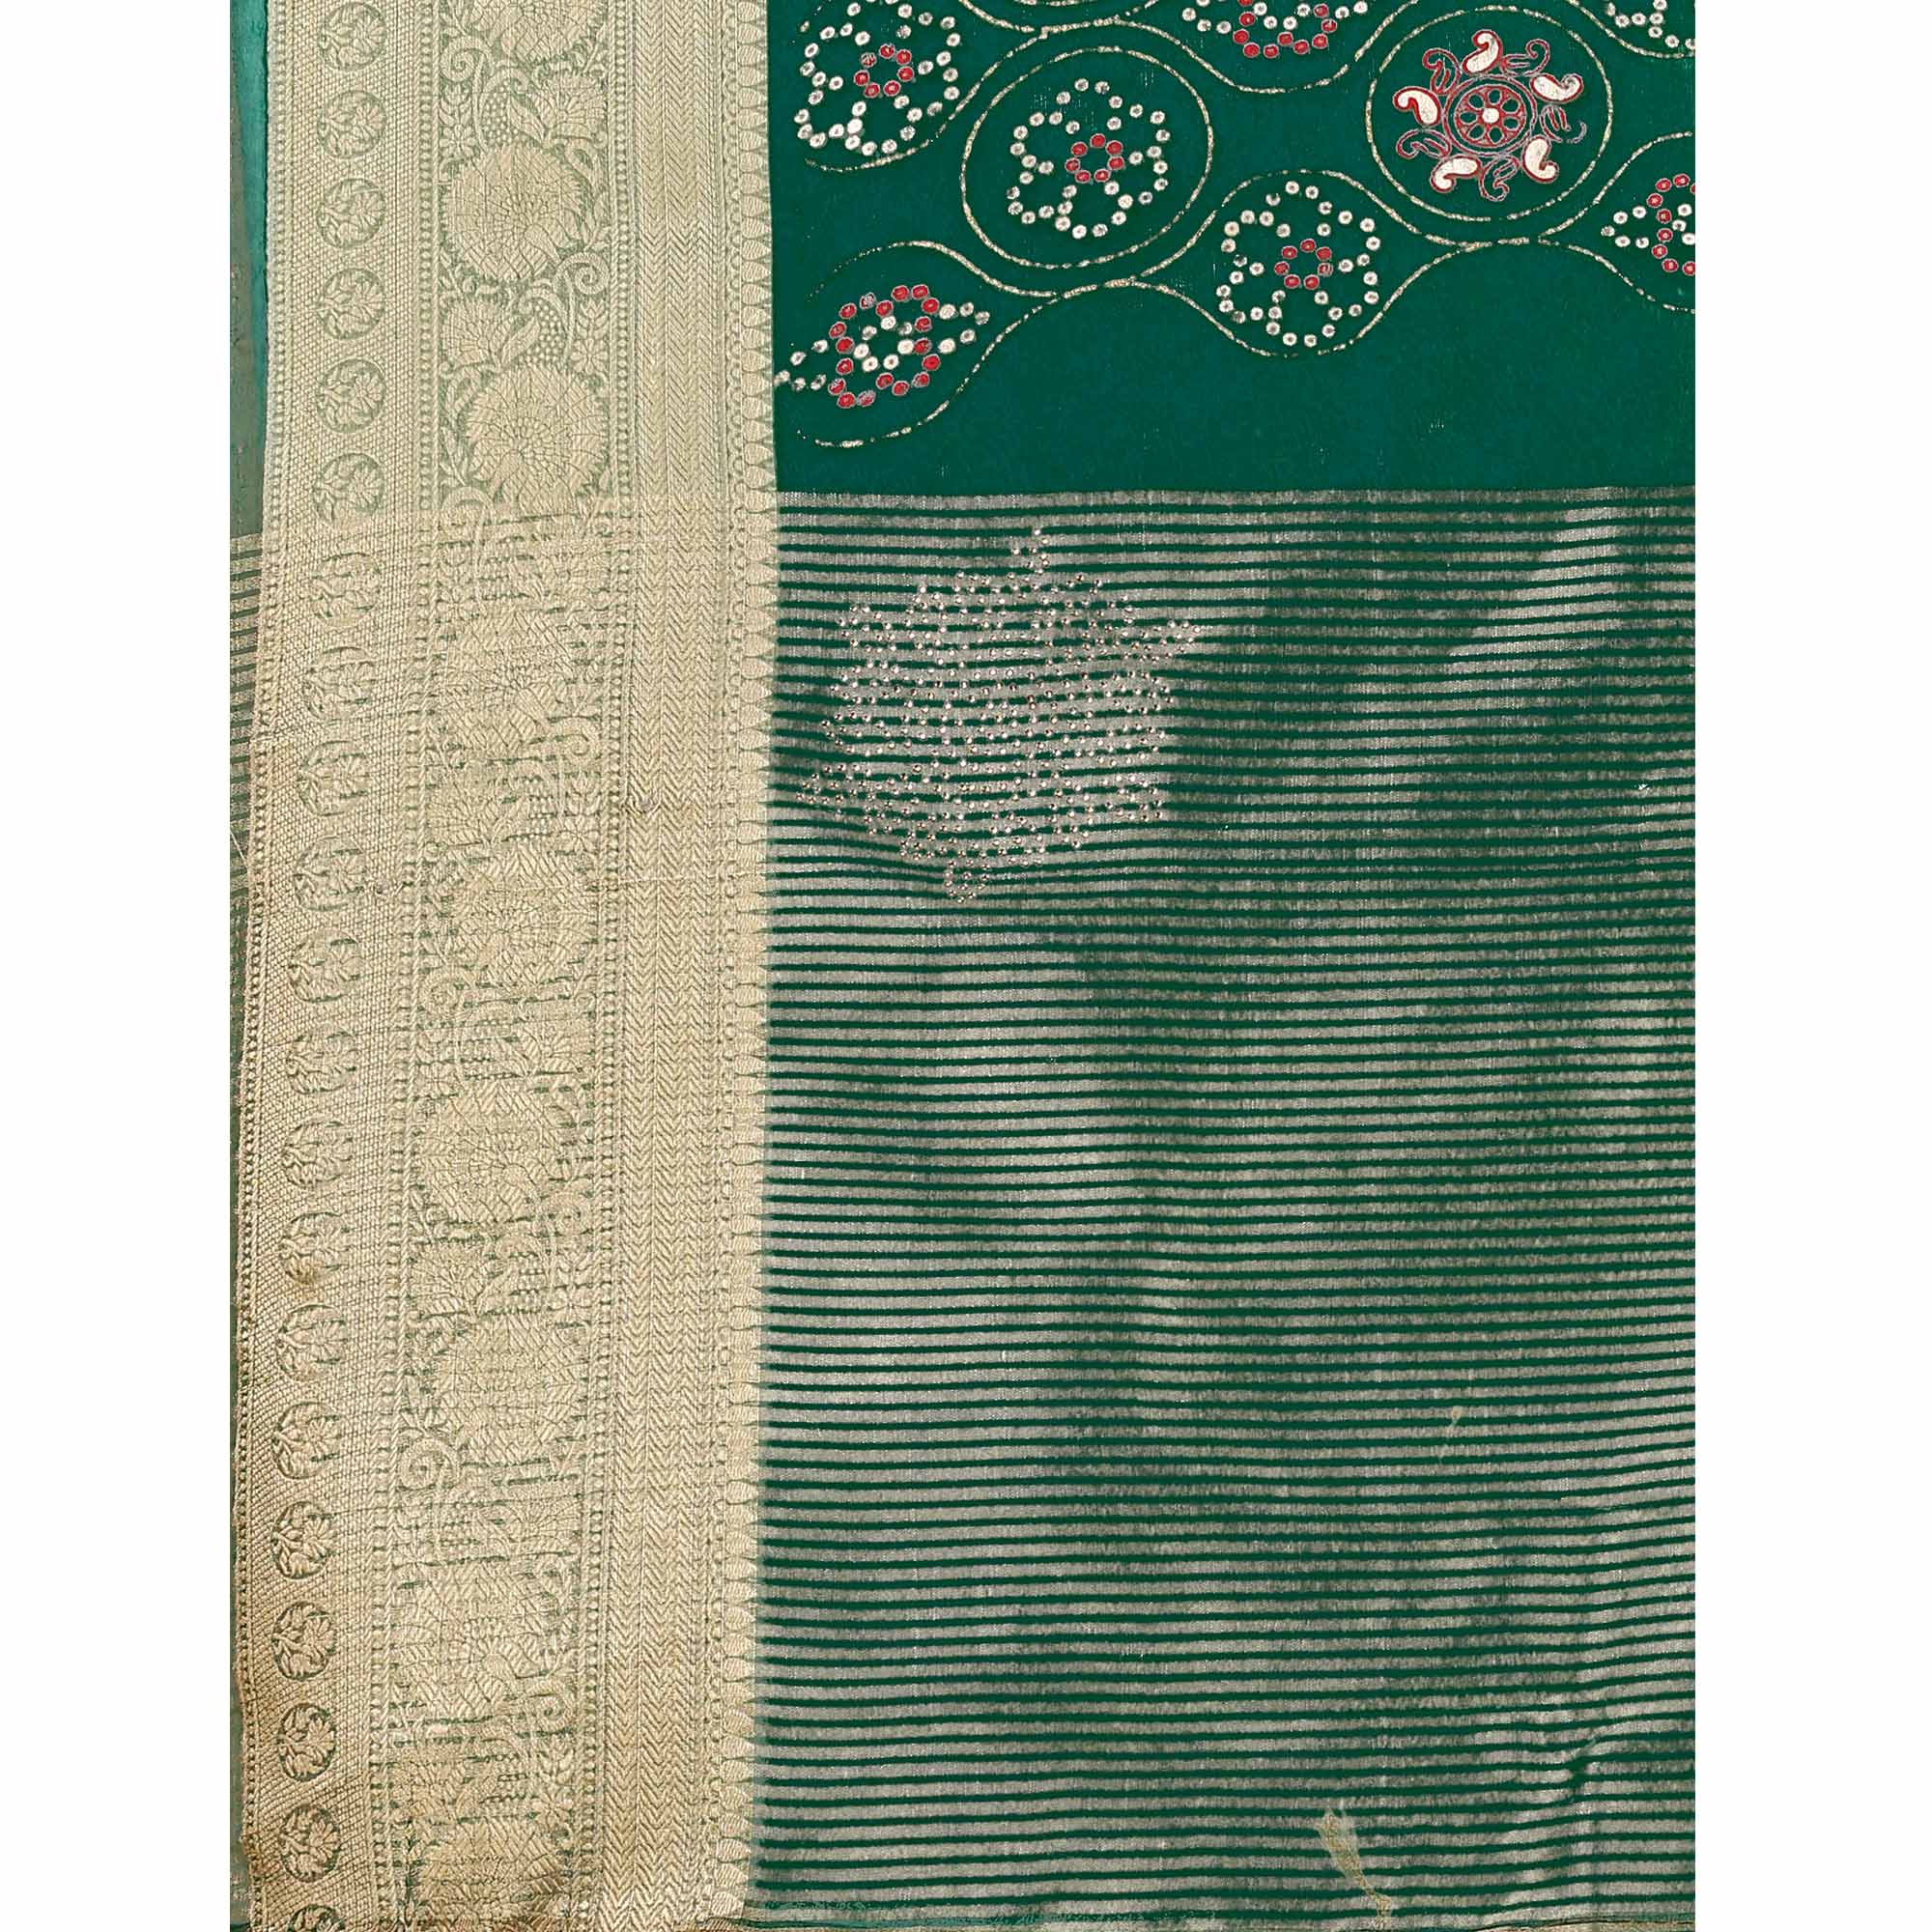 Green Bandhani Printed Organza Saree With Woven Border